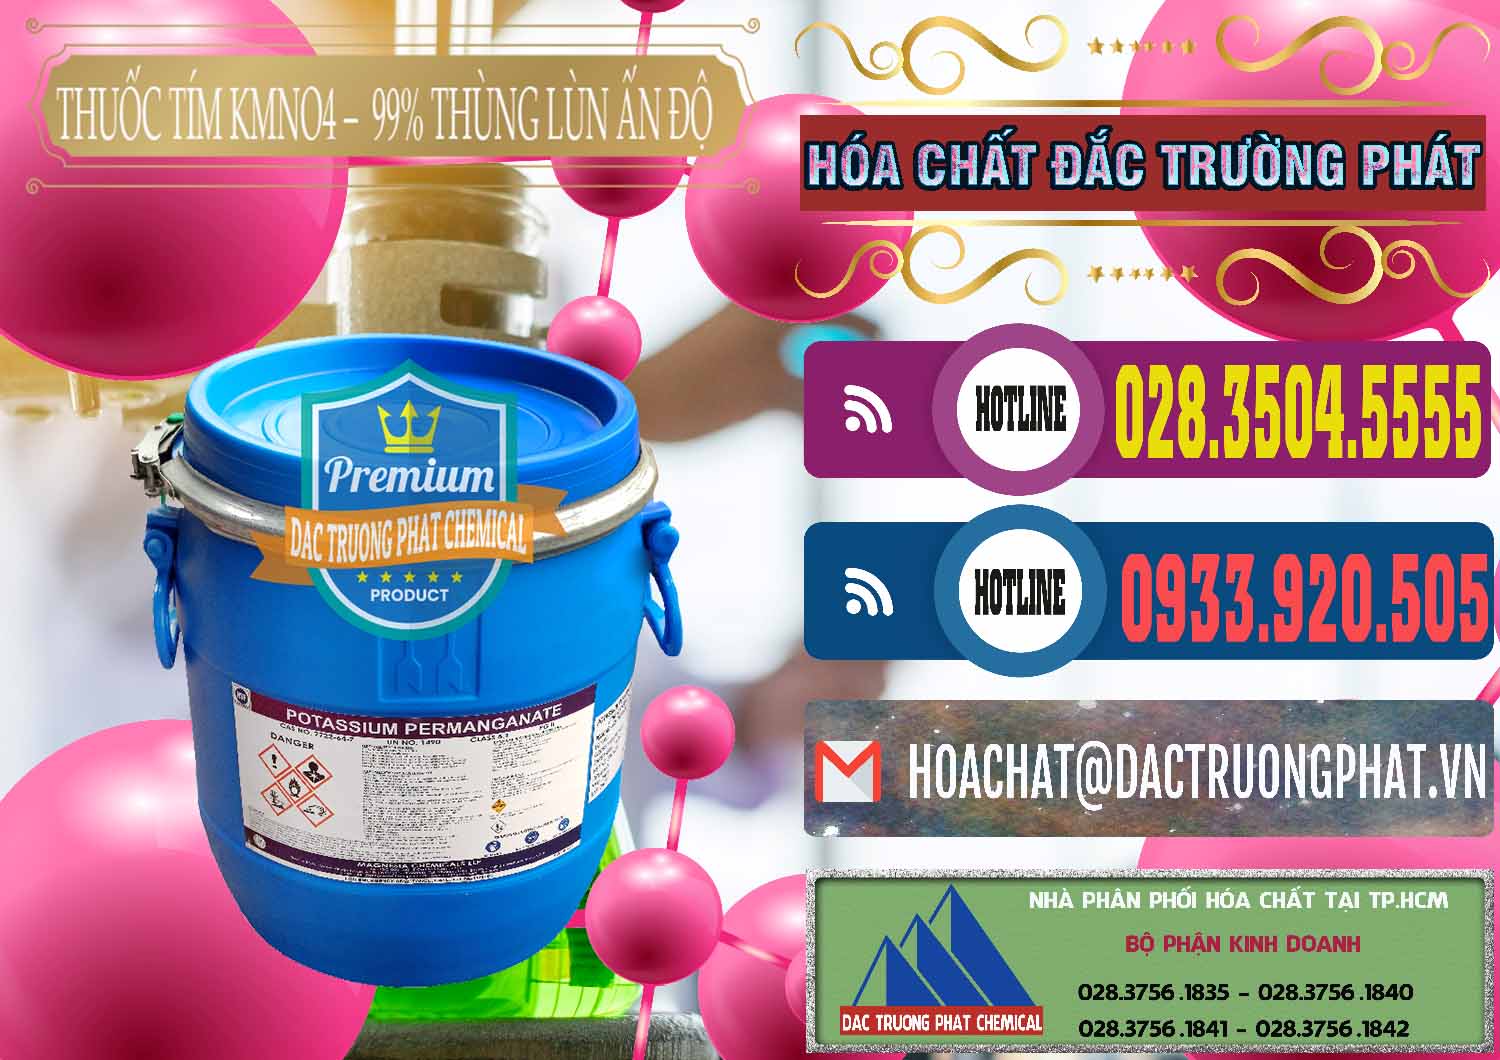 Đơn vị cung cấp _ bán Thuốc Tím - KMNO4 Thùng Lùn 99% Magnesia Chemicals Ấn Độ India - 0165 - Cung cấp và phân phối hóa chất tại TP.HCM - muabanhoachat.com.vn